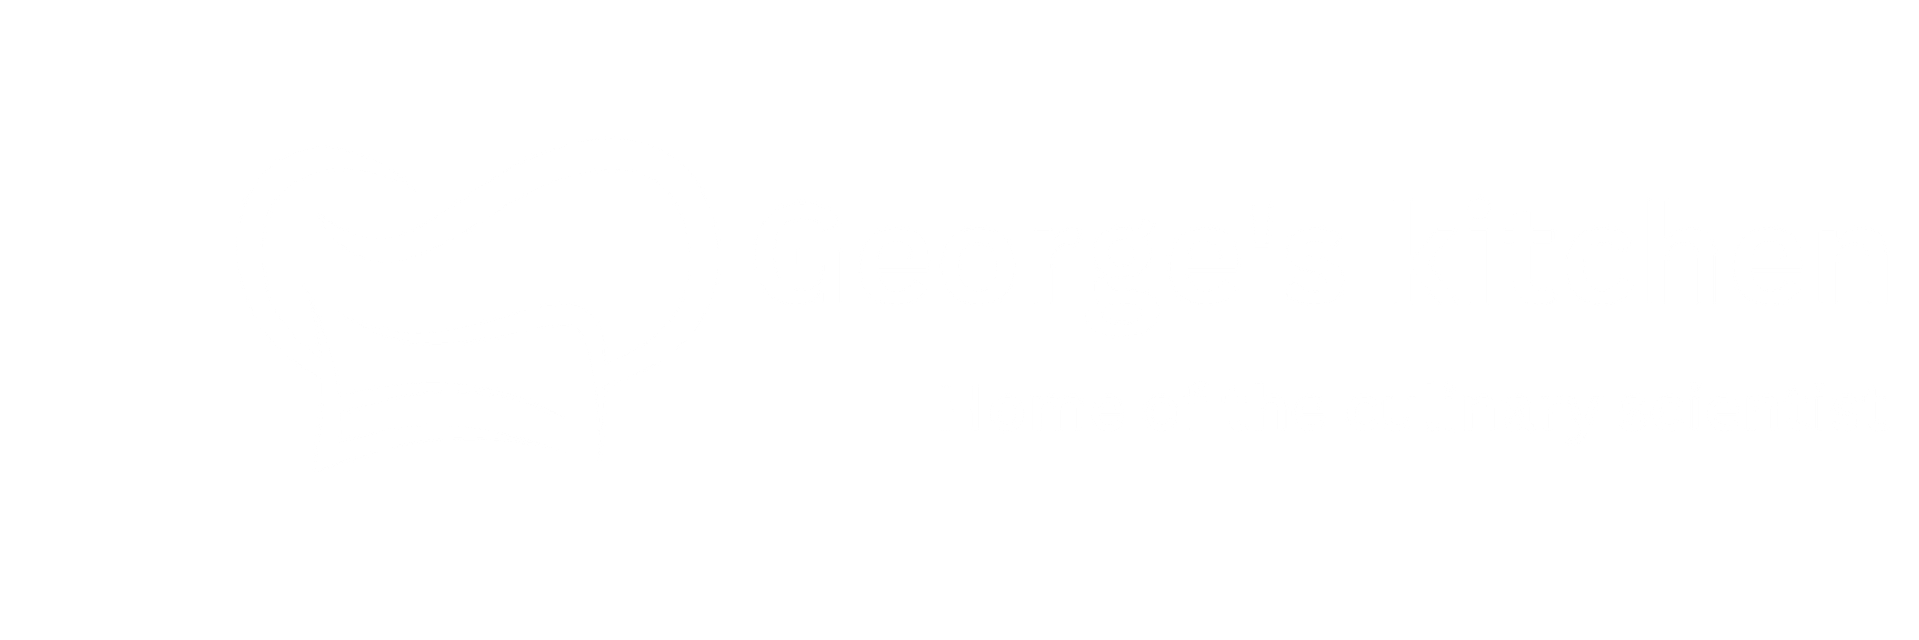 Georges Kitchen 1 